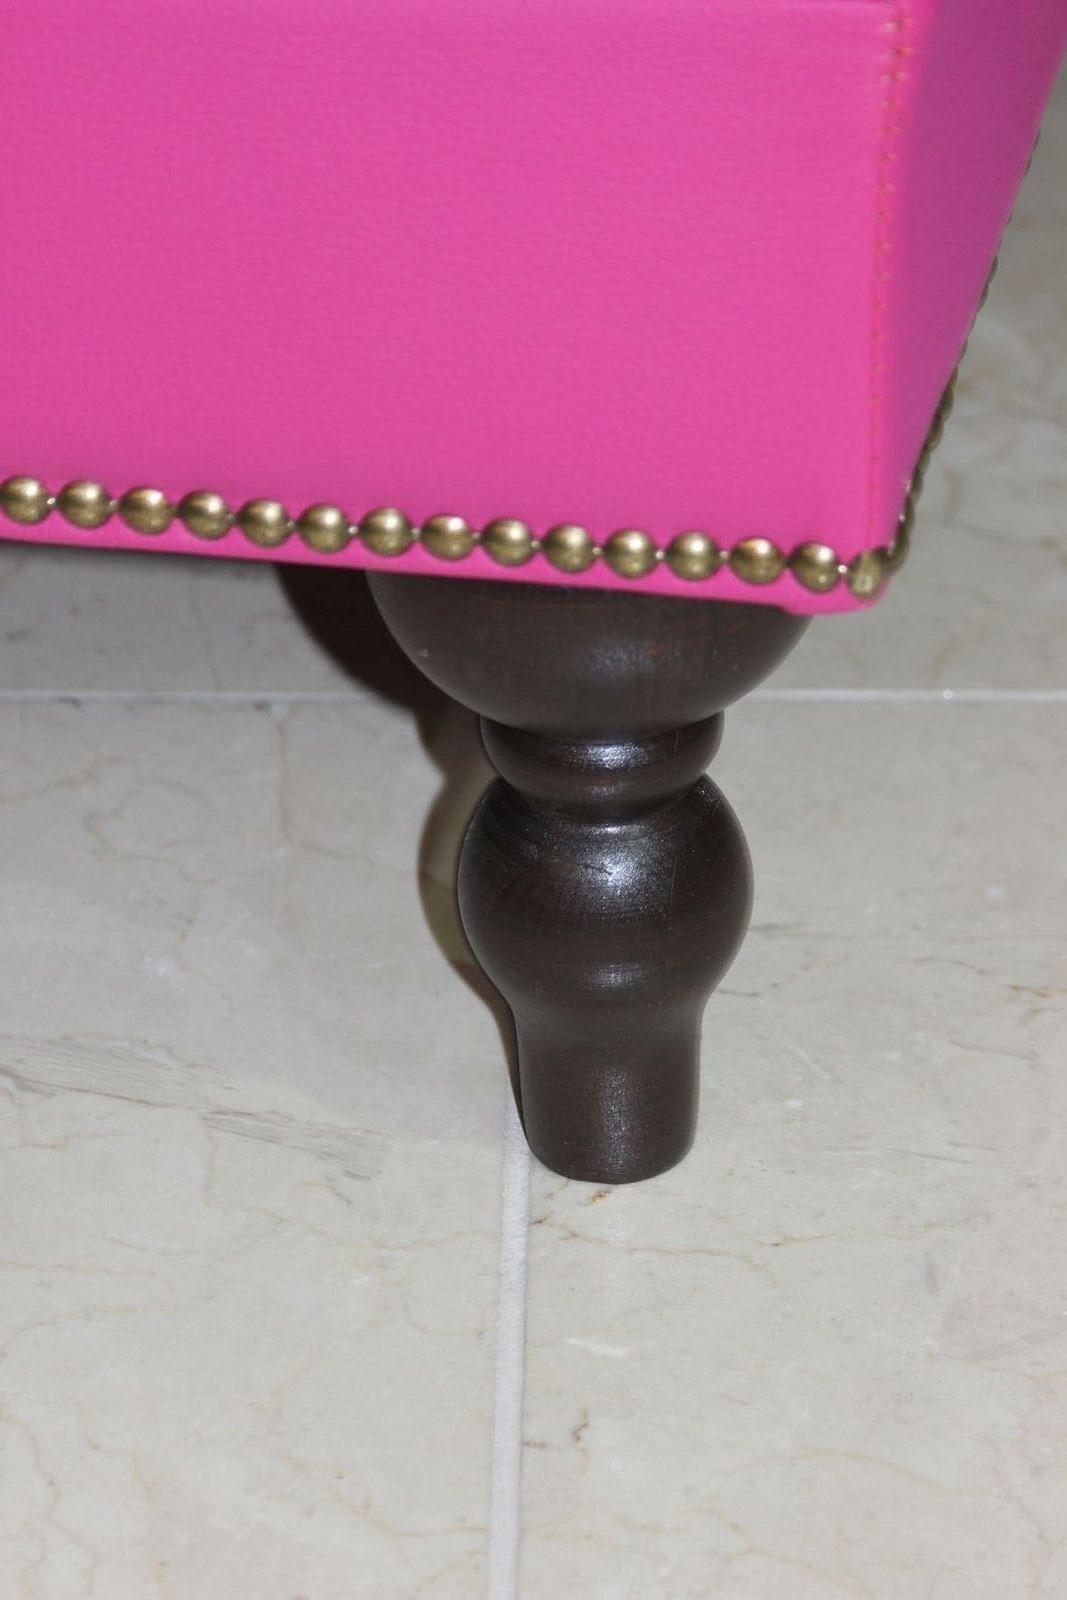 New JVmoebel Luxury Textile Stool Rosa Design Modern Soft Pouffe Sofort Elegant Footstool Hocker